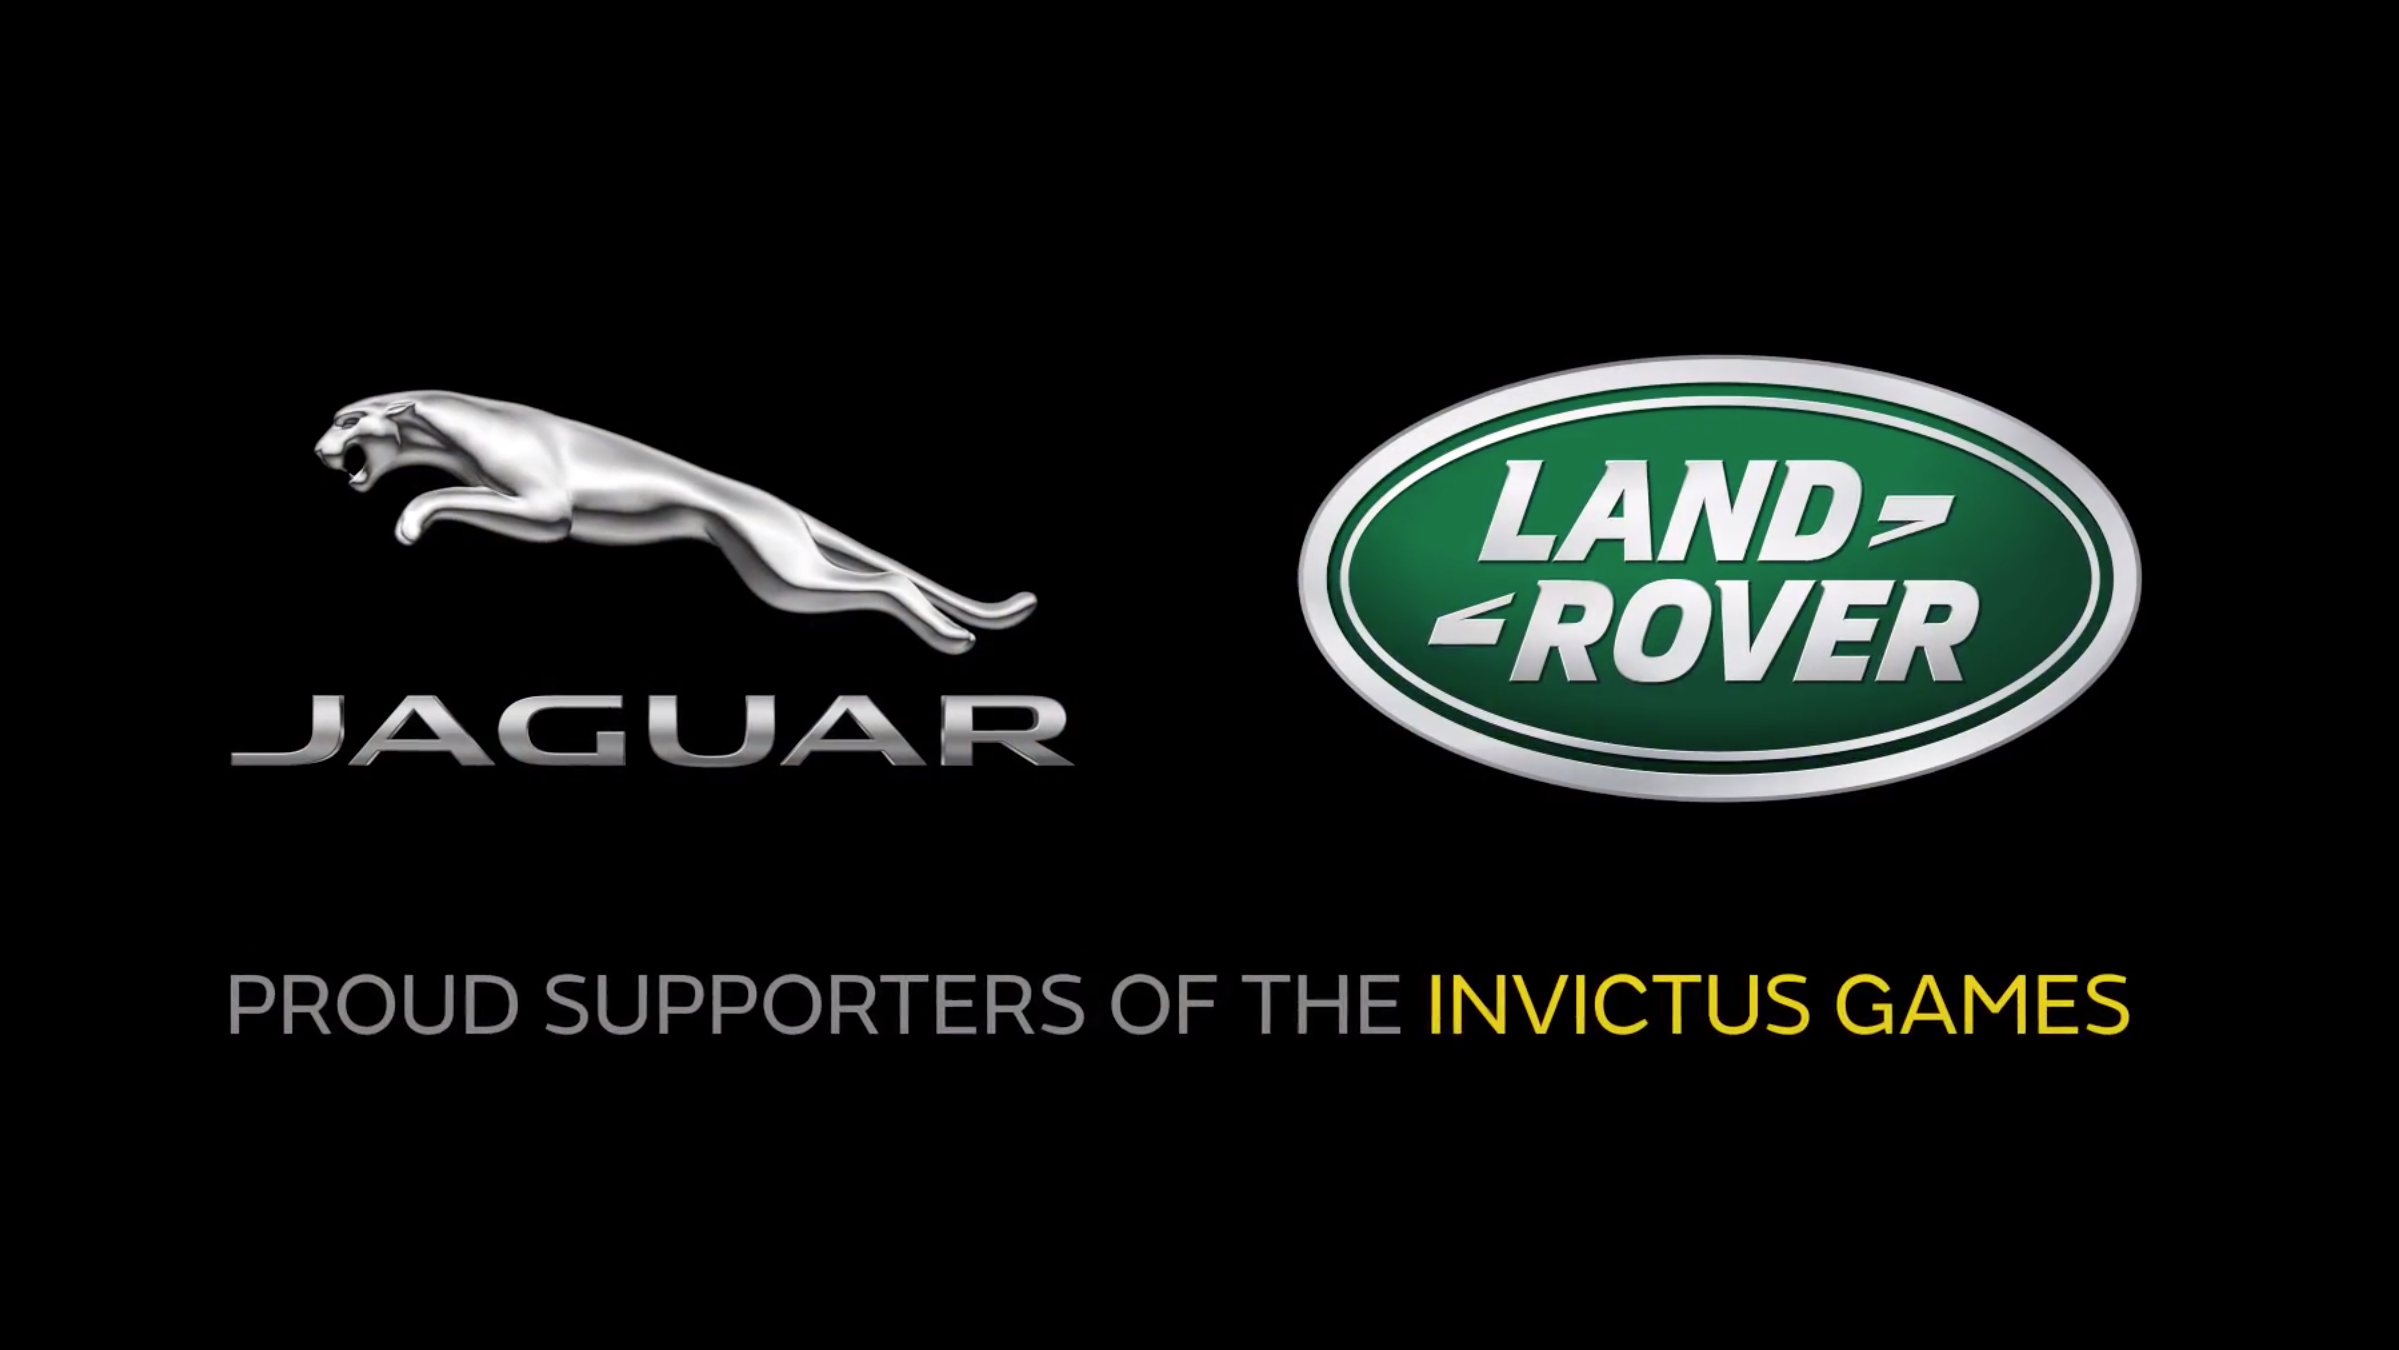 Jaguar Land Rover – Invictus Games 2017